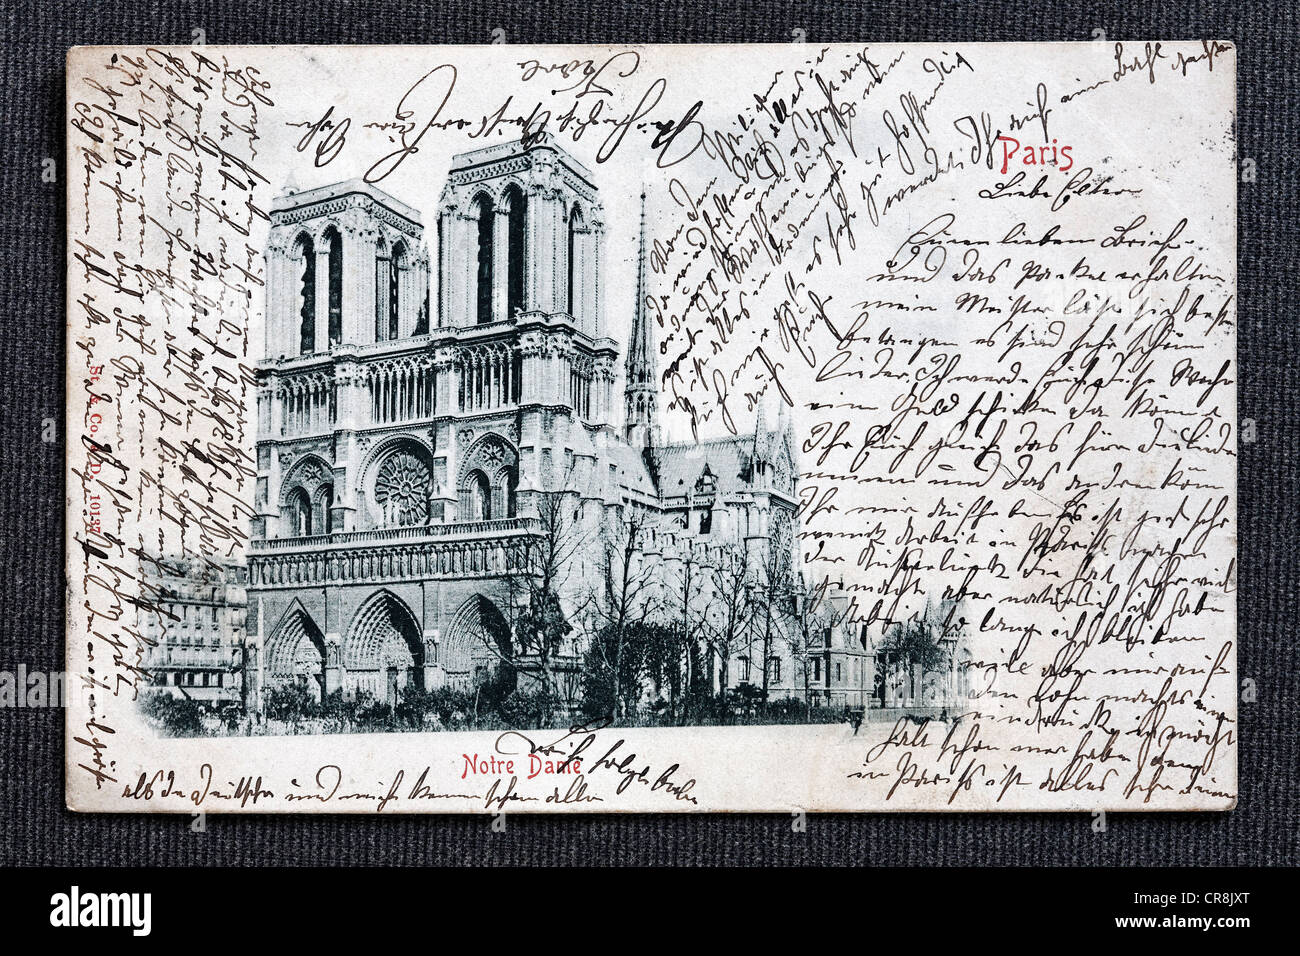 Notre-Dame de Paris, cathédrale, France, historique, cartes postales, lettres cursives vers 1900 Banque D'Images